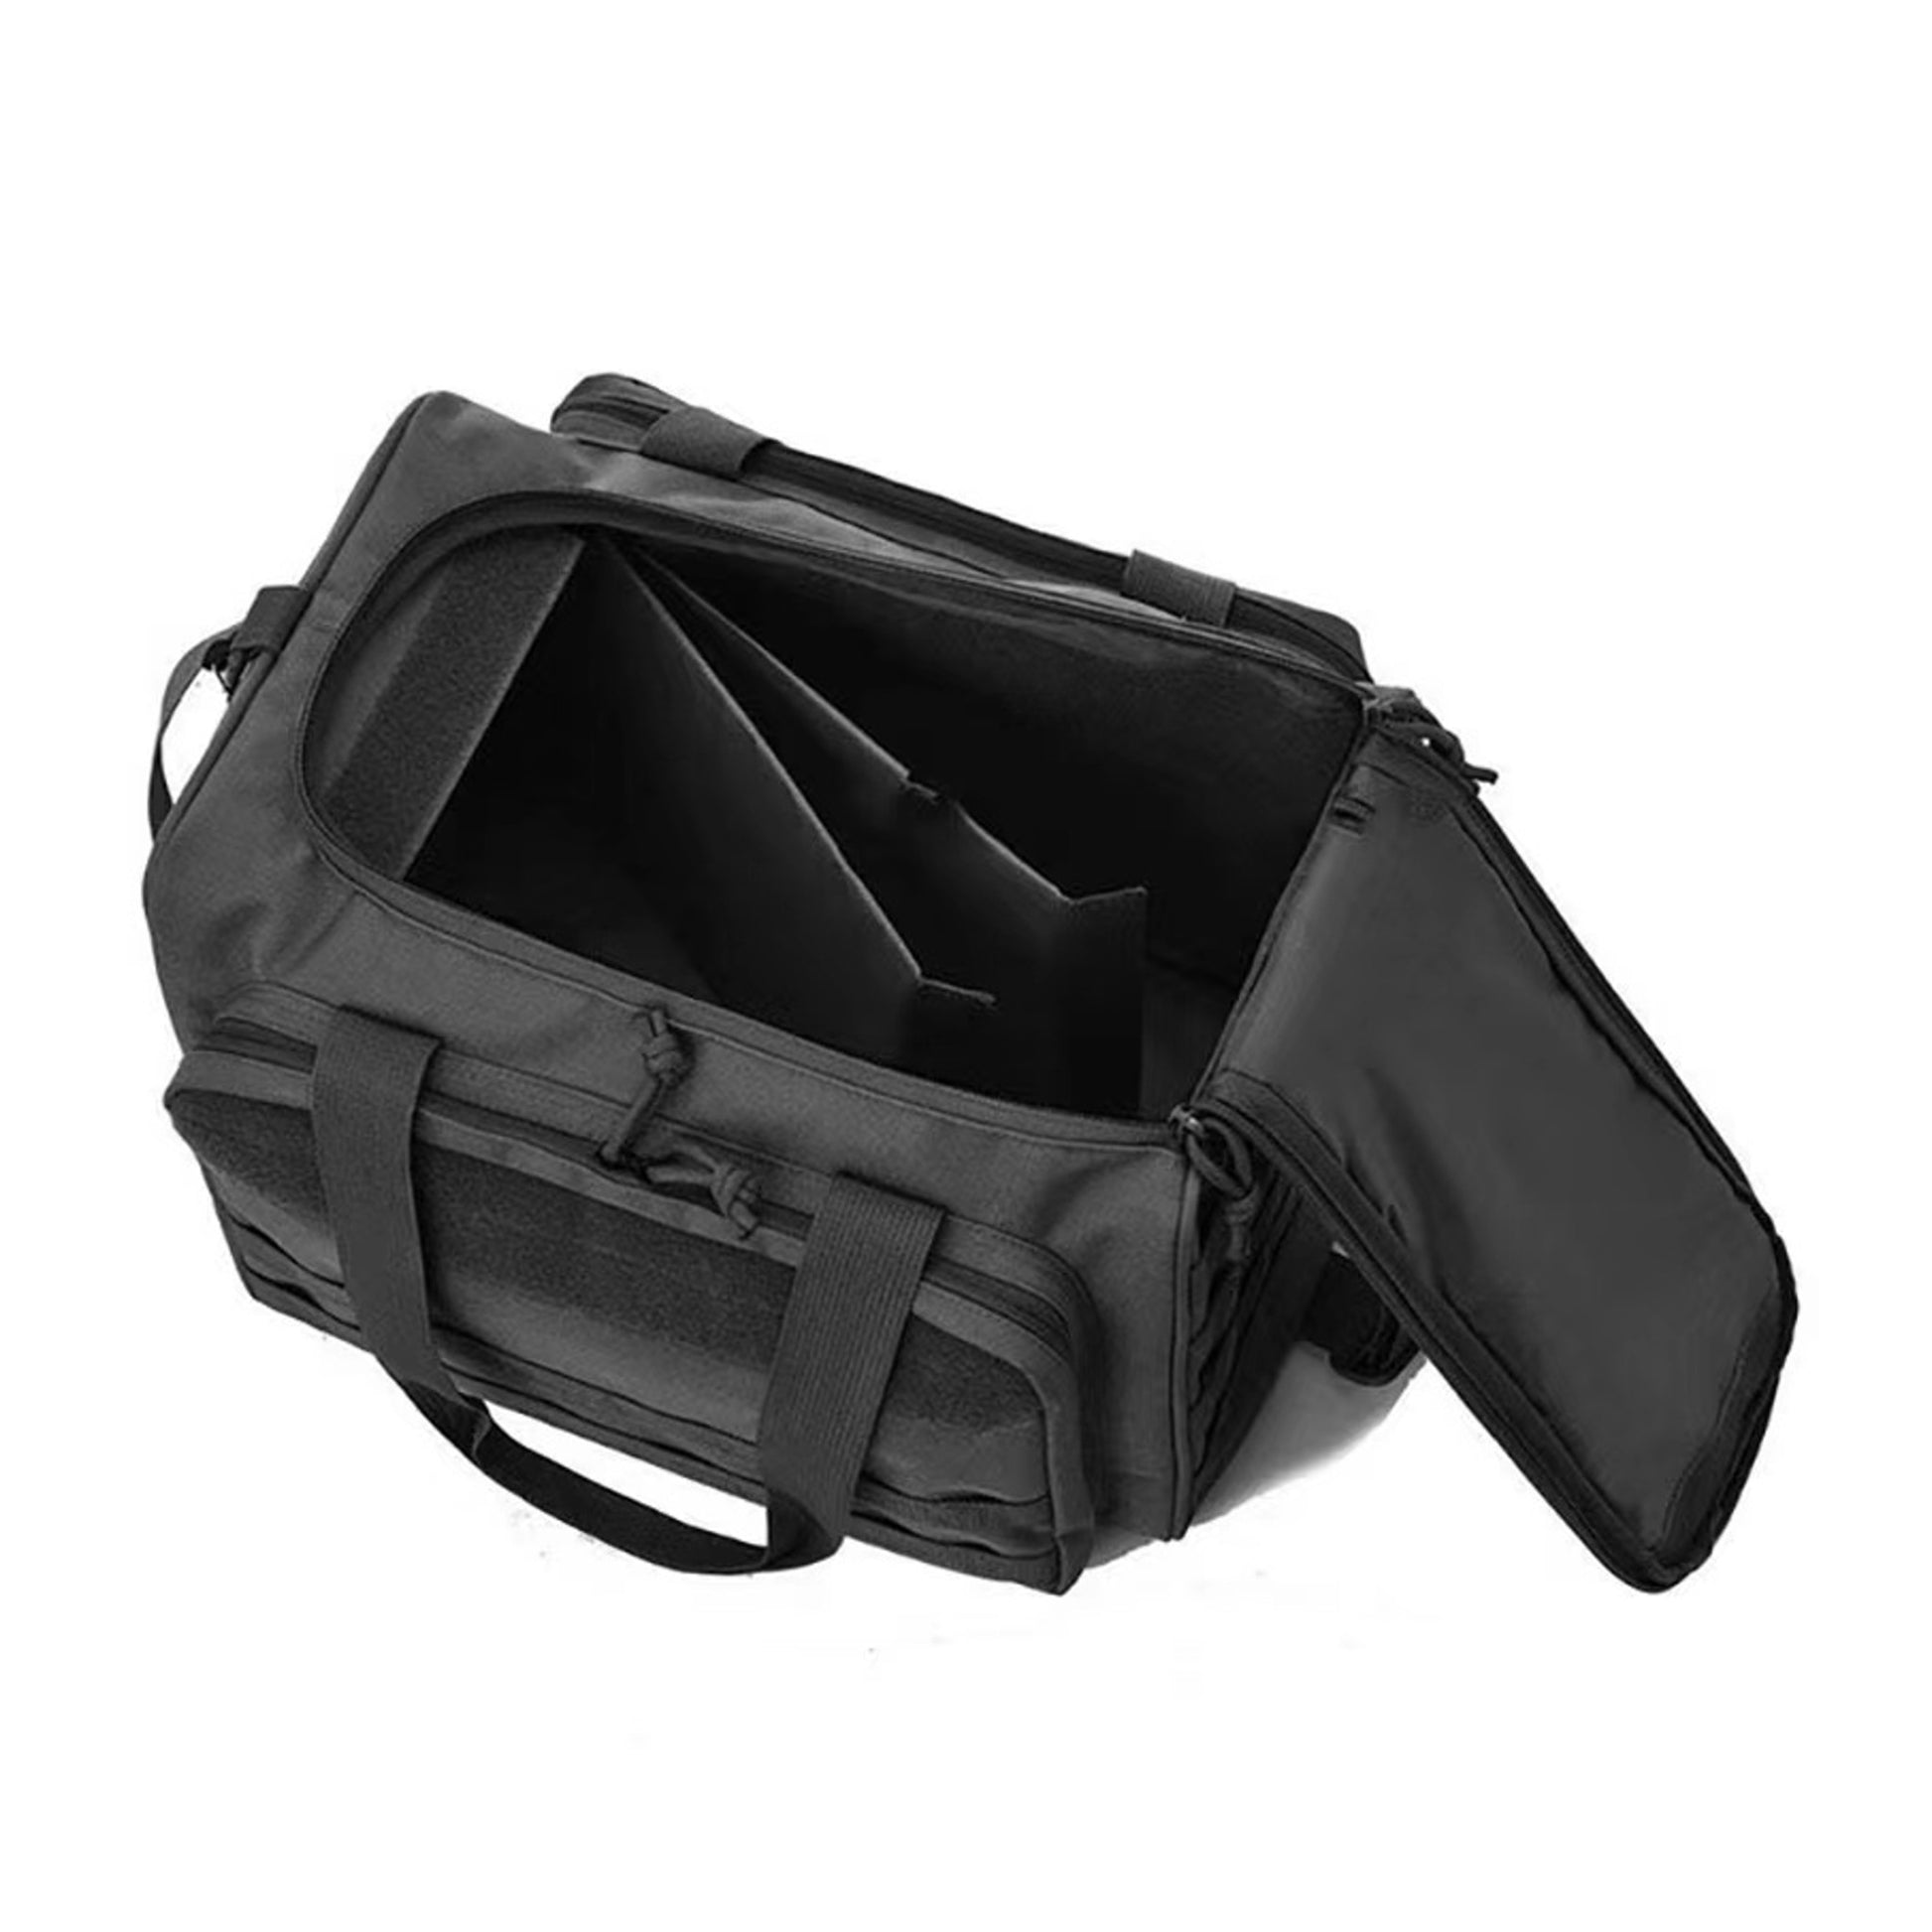 IJ Tactical Range Bag Black